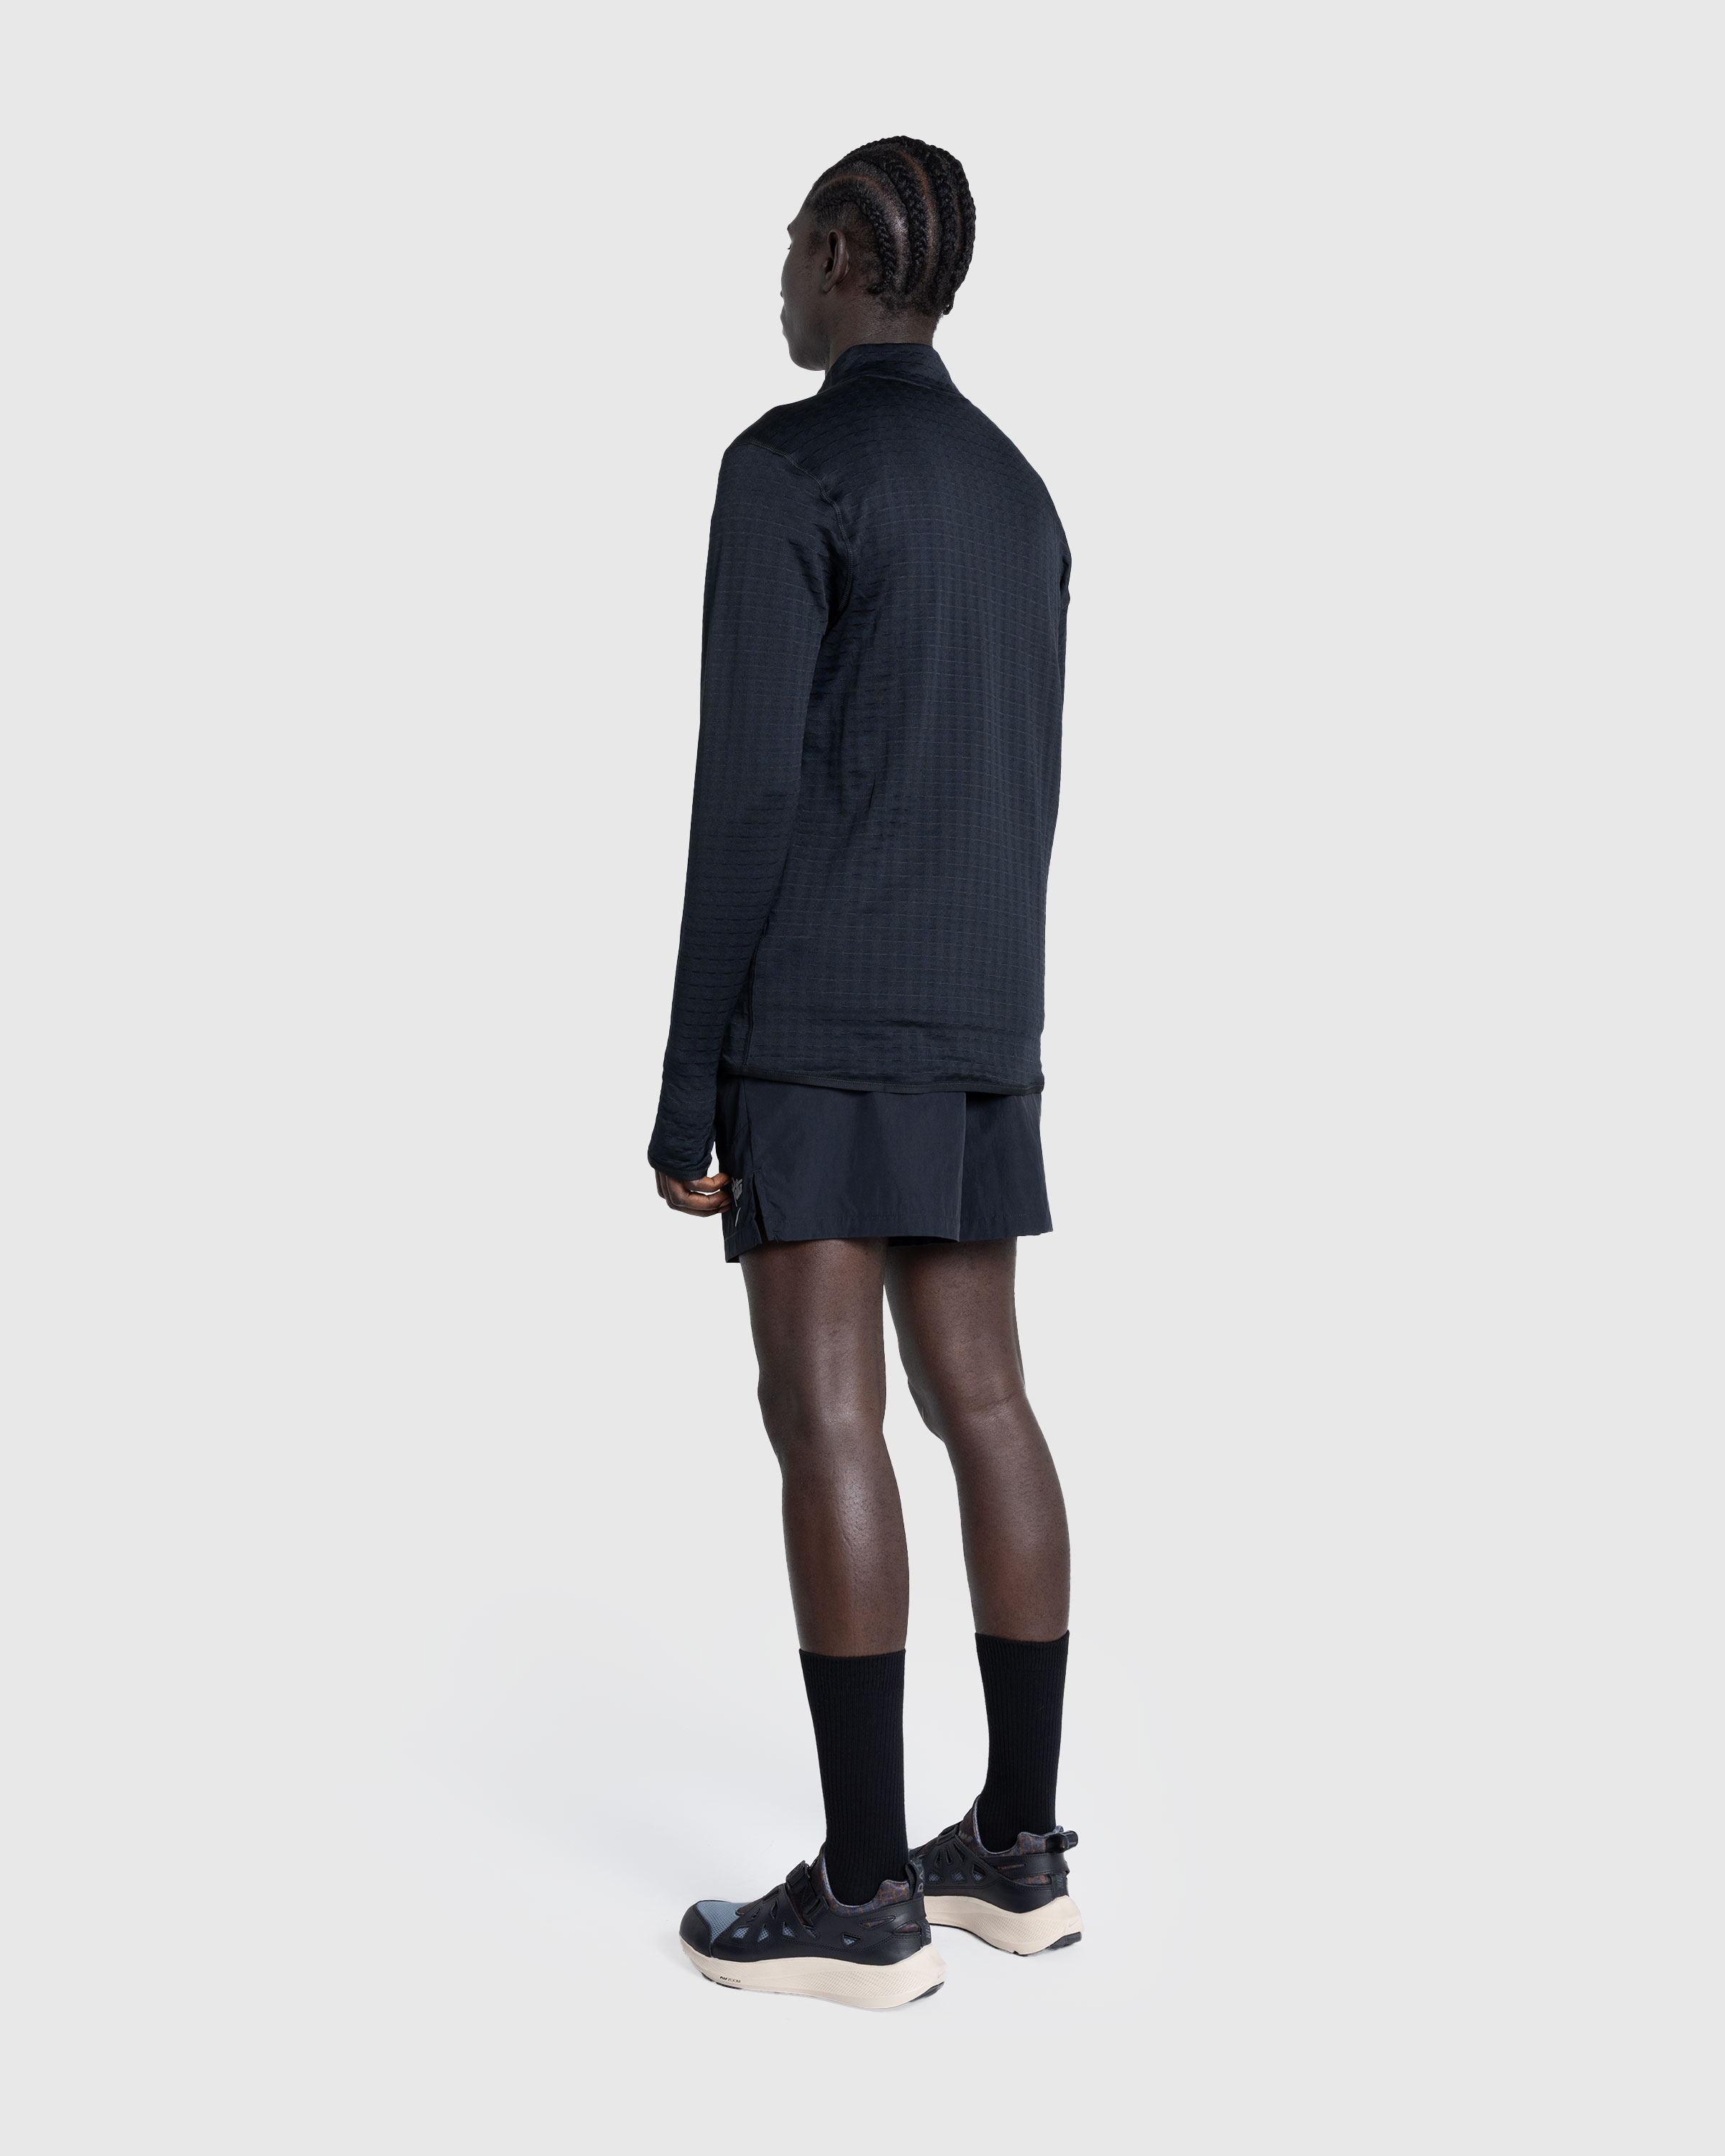 Nike x Patta – Half-Zip Long-Sleeve Top Black - Zip-Ups - Black - Image 4